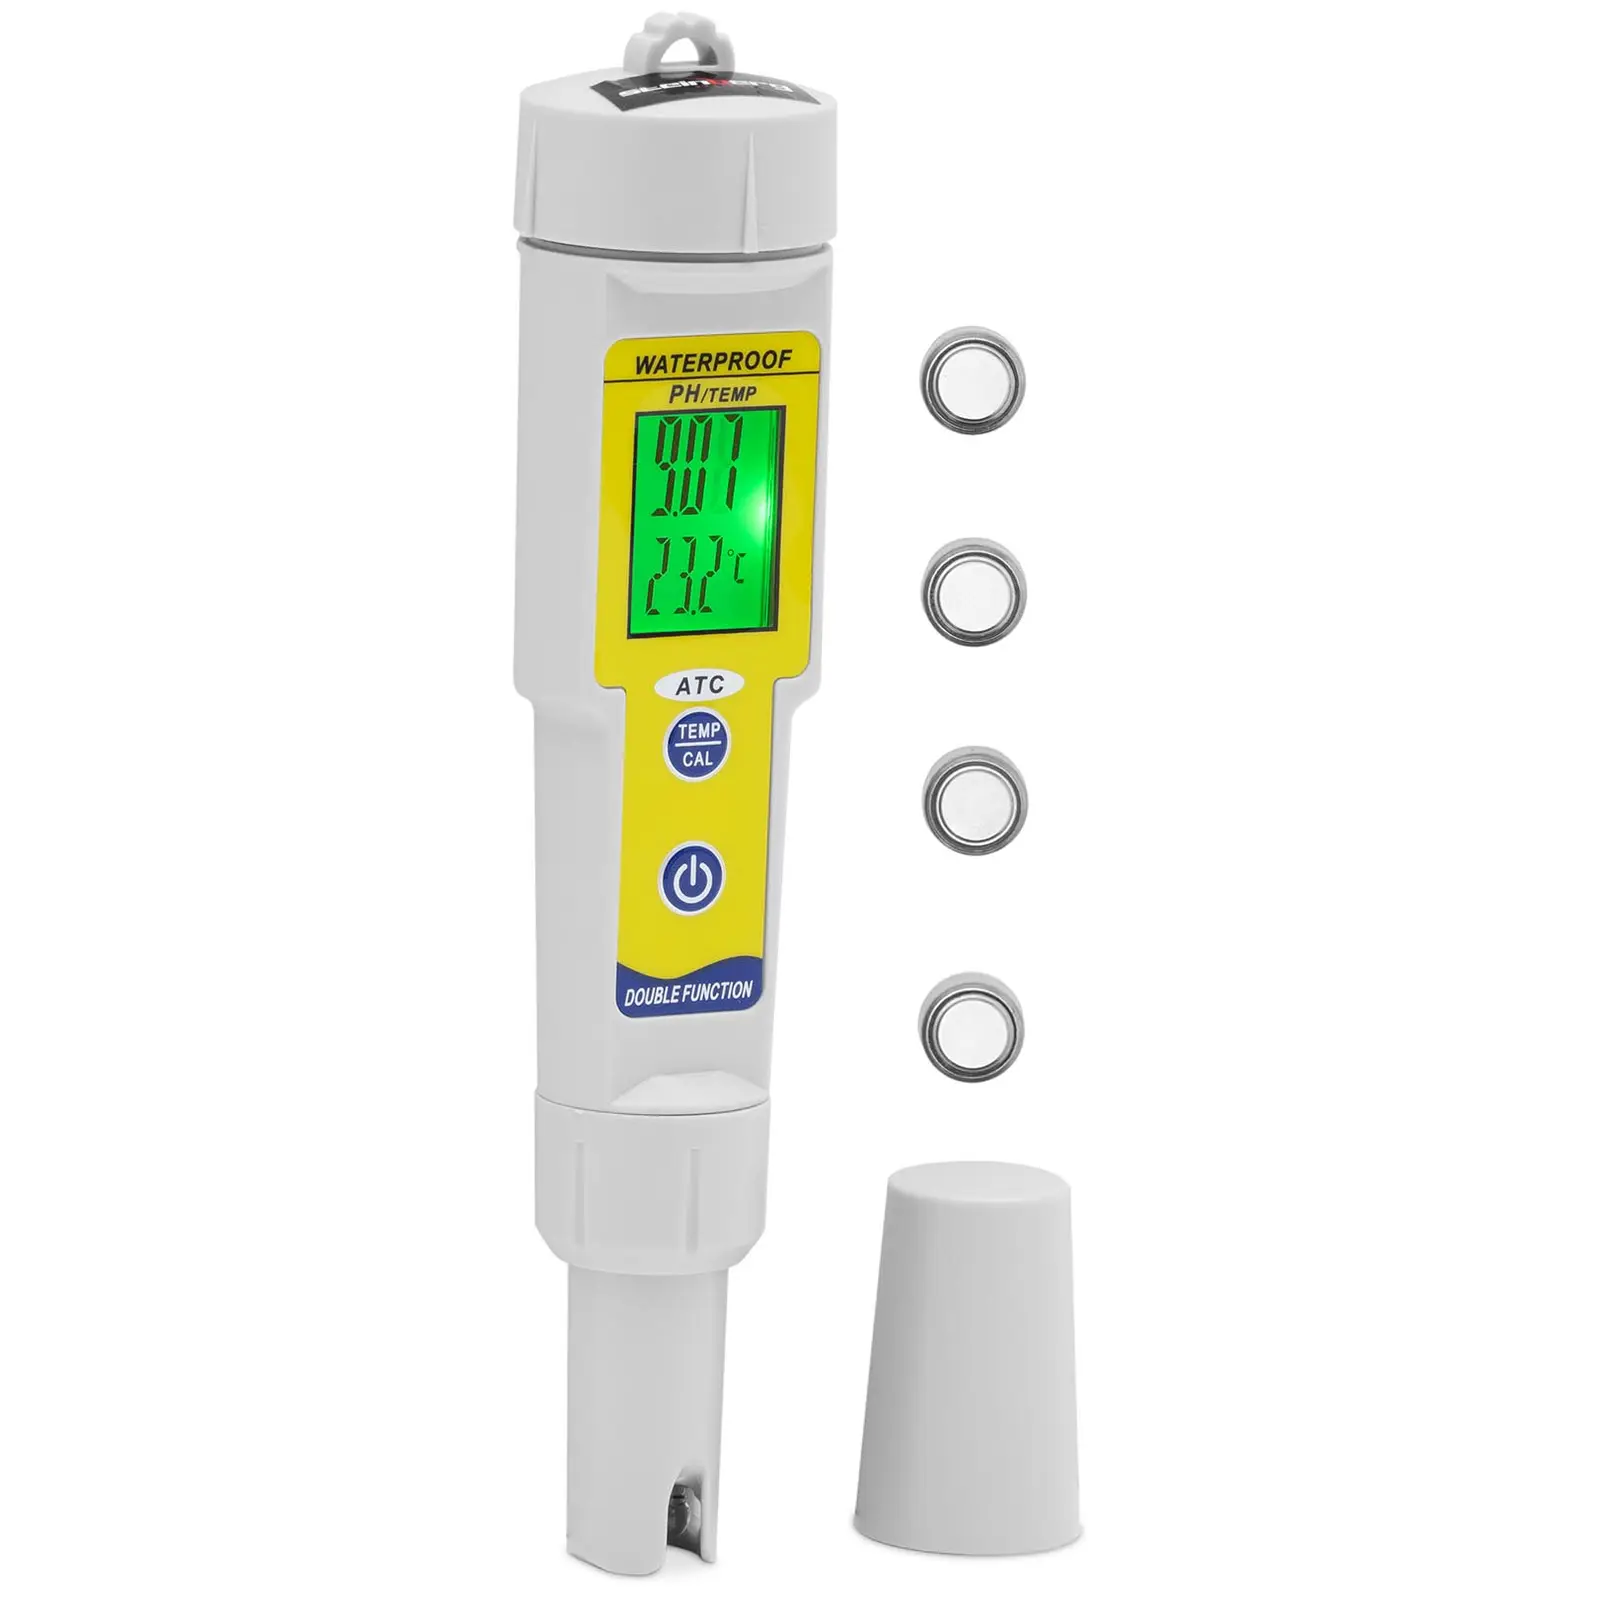 Testeur de pH avec température - LCD - 0-14 pH / température 0 - 50 °C